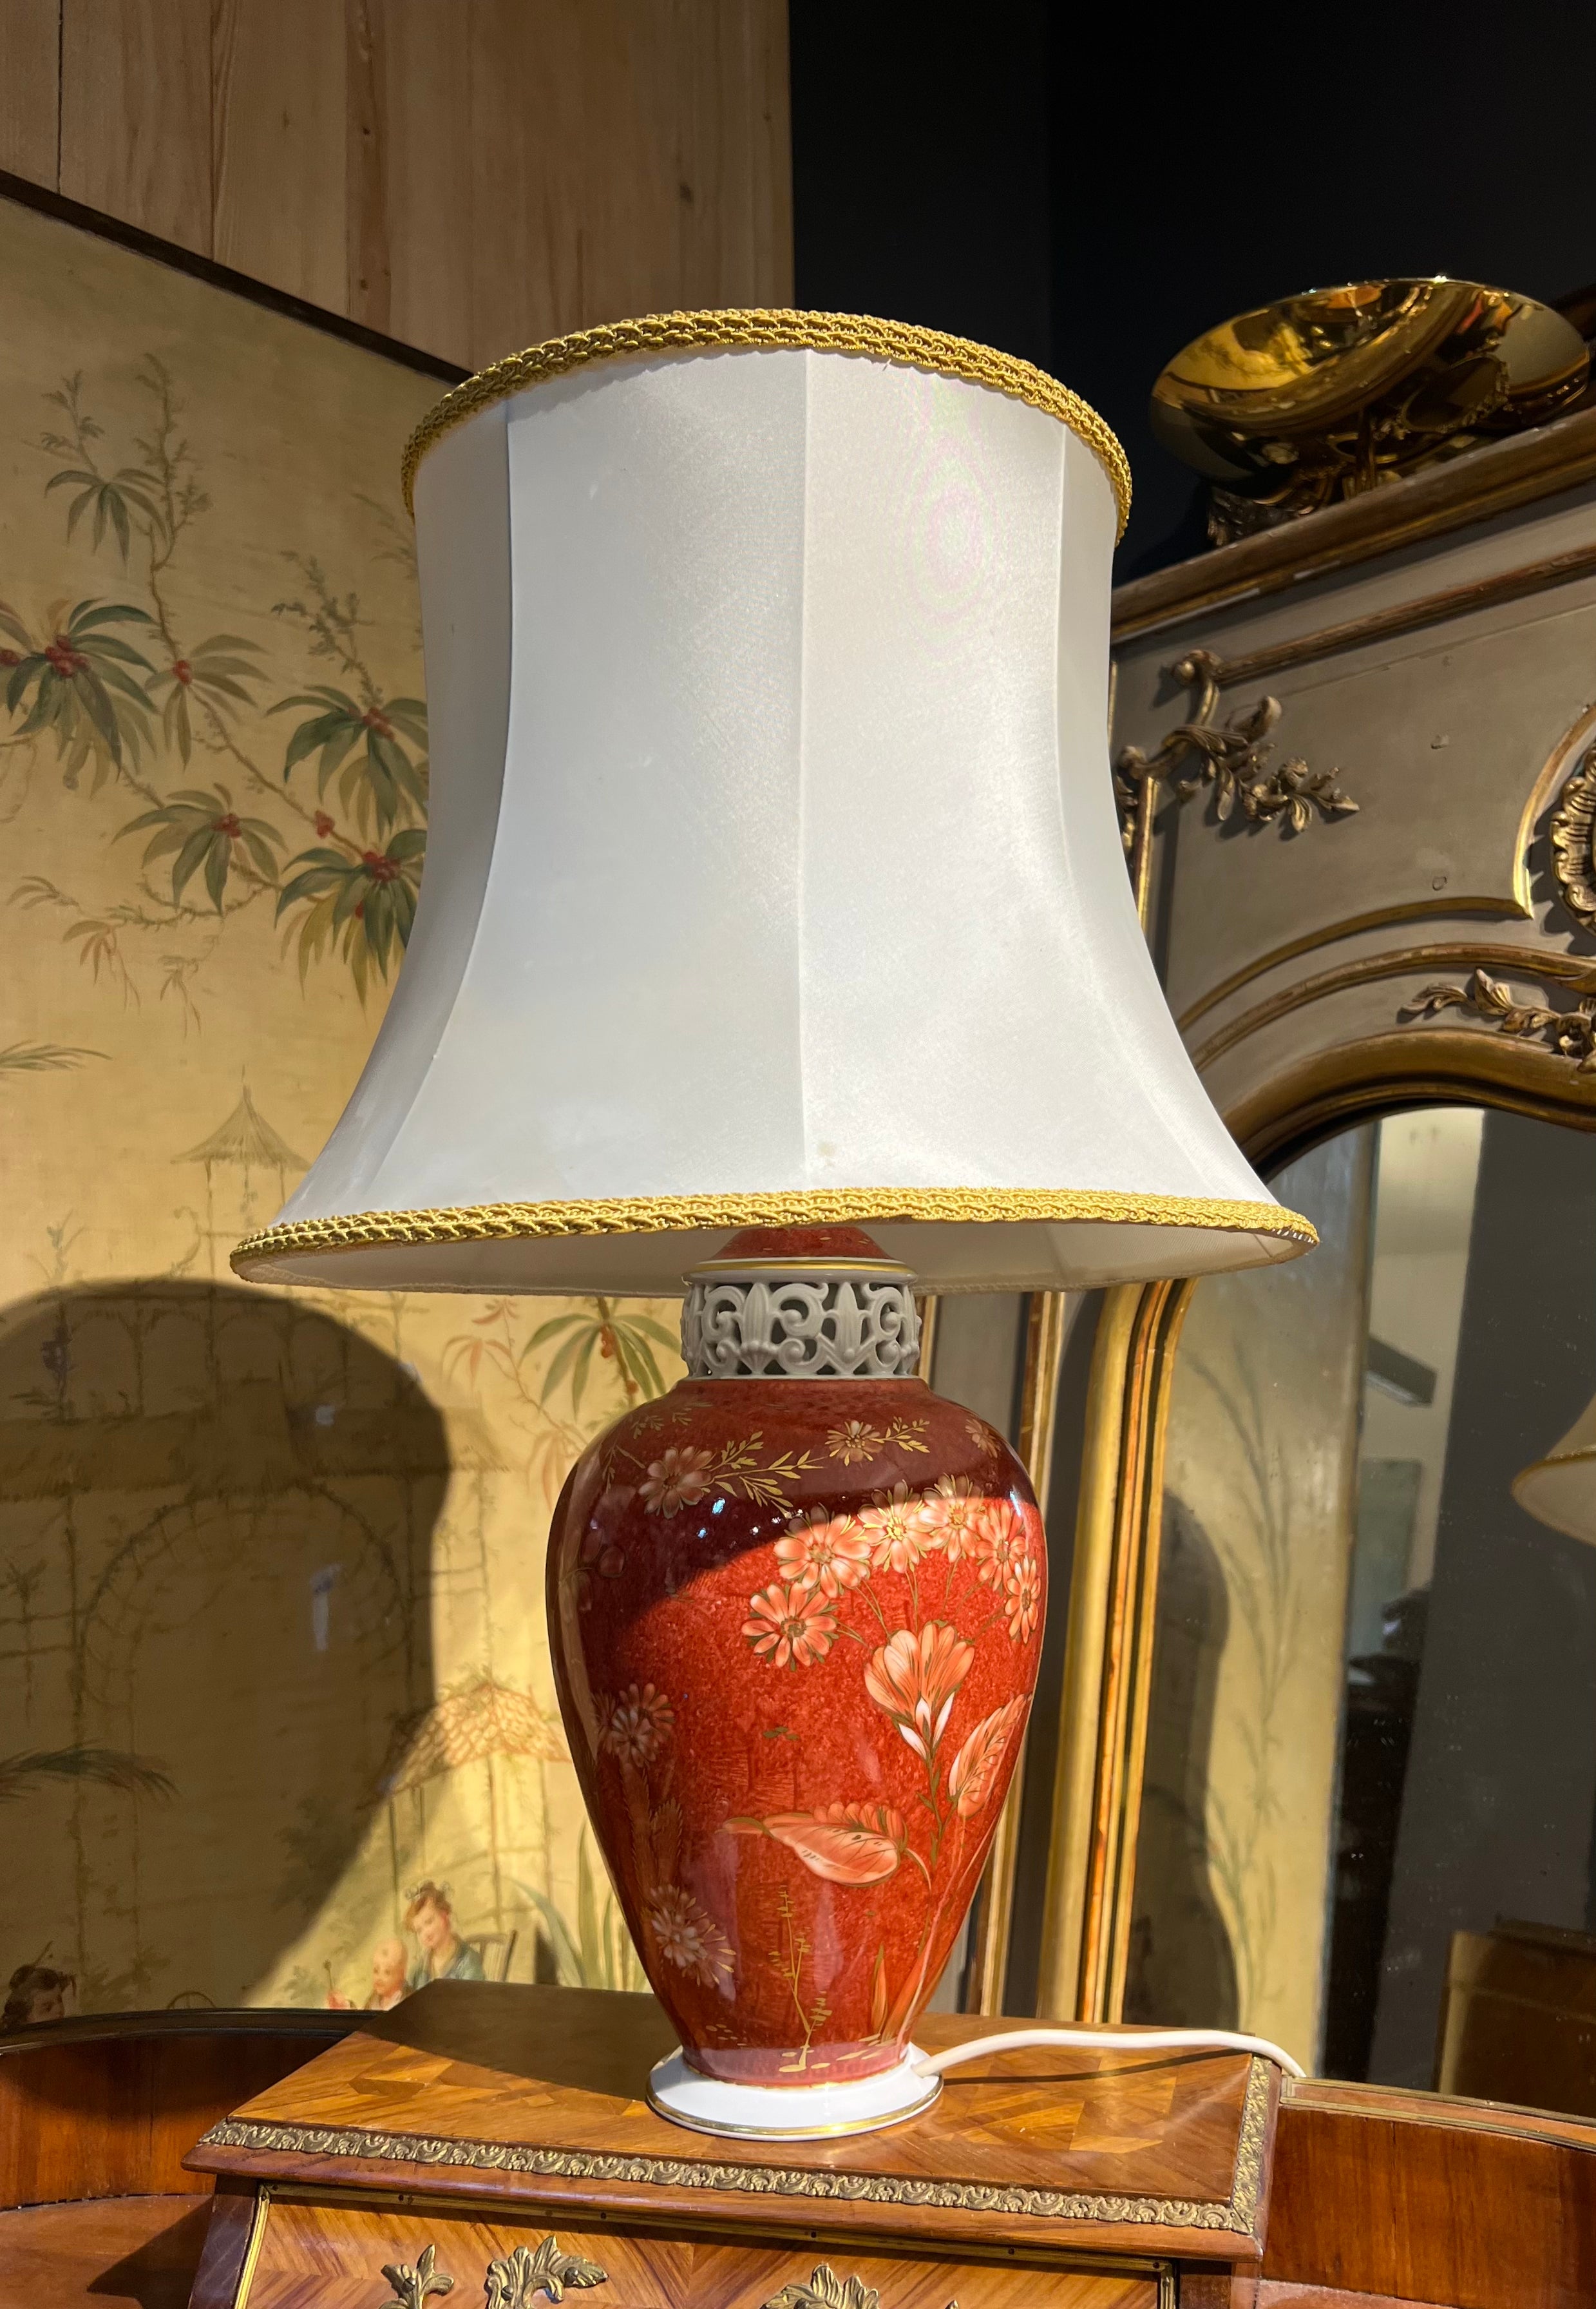 Lampe de table du 20e siècle en céramique rouge peinte à la main avec des décorations florales par Rosenthal en très bon état d'authenticité.
Dimensions sans l'abat-jour 40/20 et 62/45 cm.
Allemagne, vers 1920

